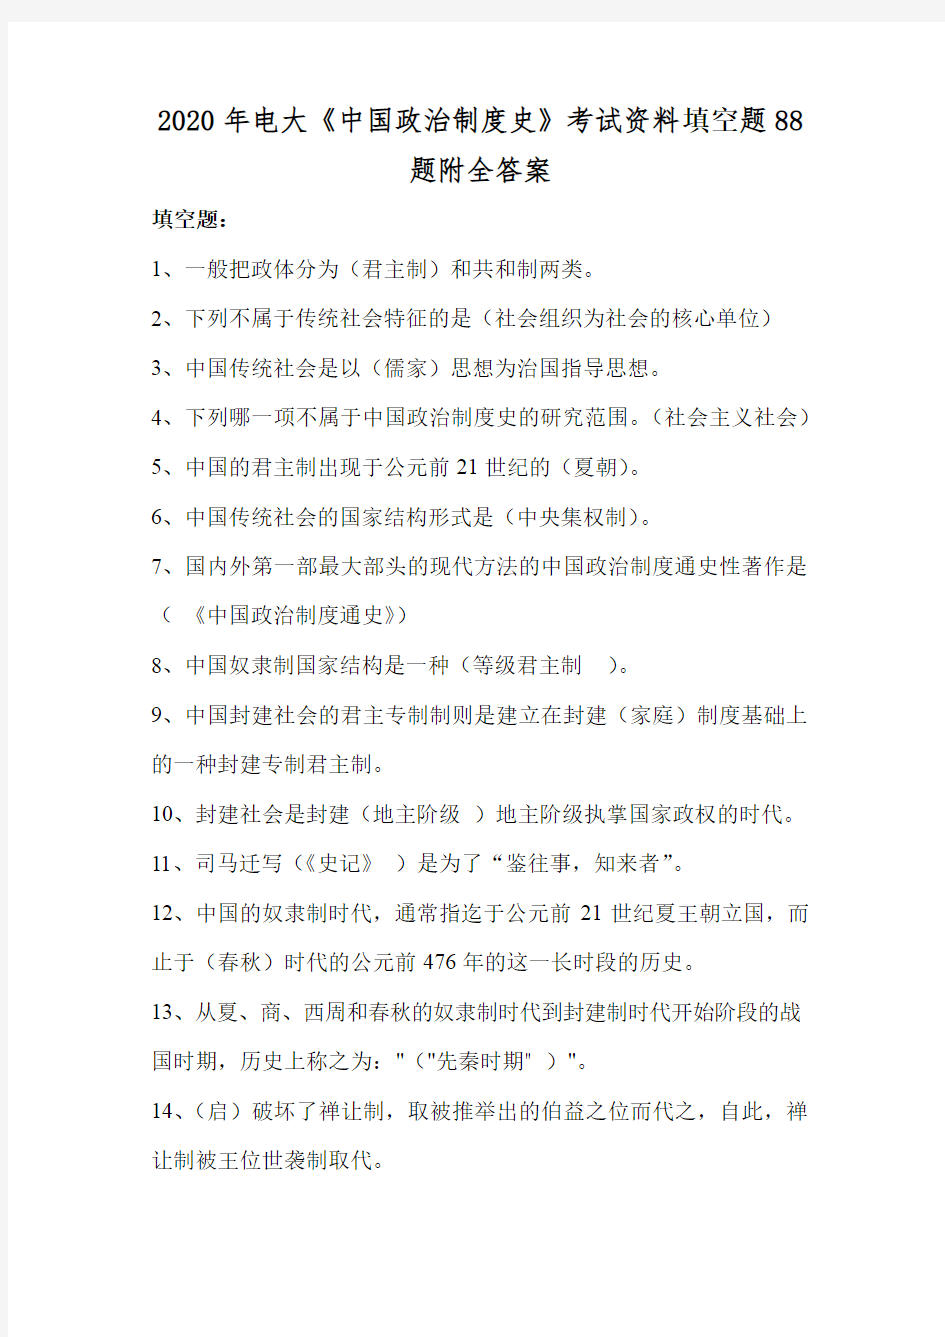 2020年电大《中国政治制度史》考试资料填空题88题附全答案